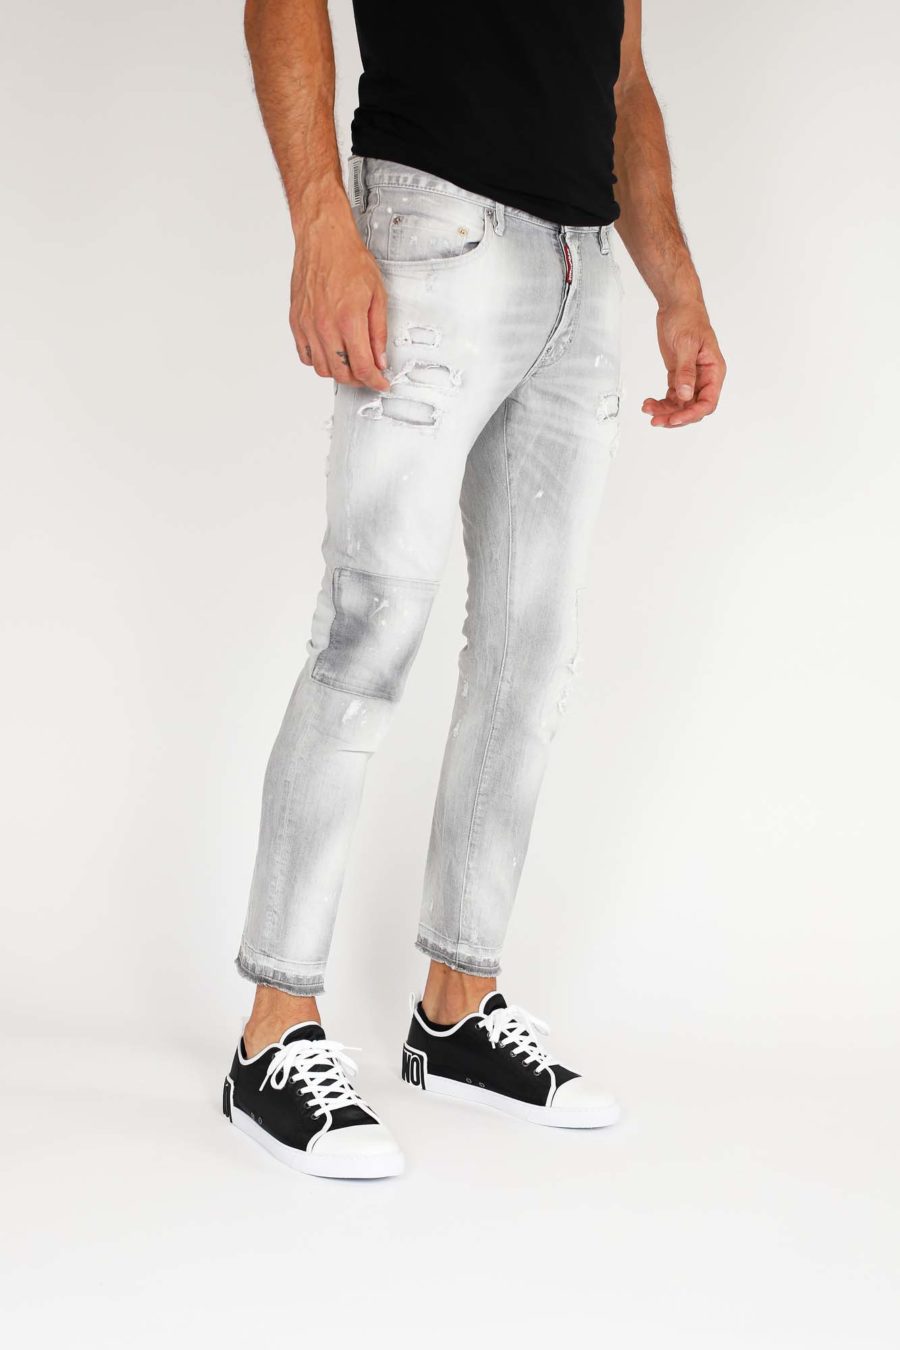 Pantalón vaquero "Skater" gris claro con parches - IMG 9854